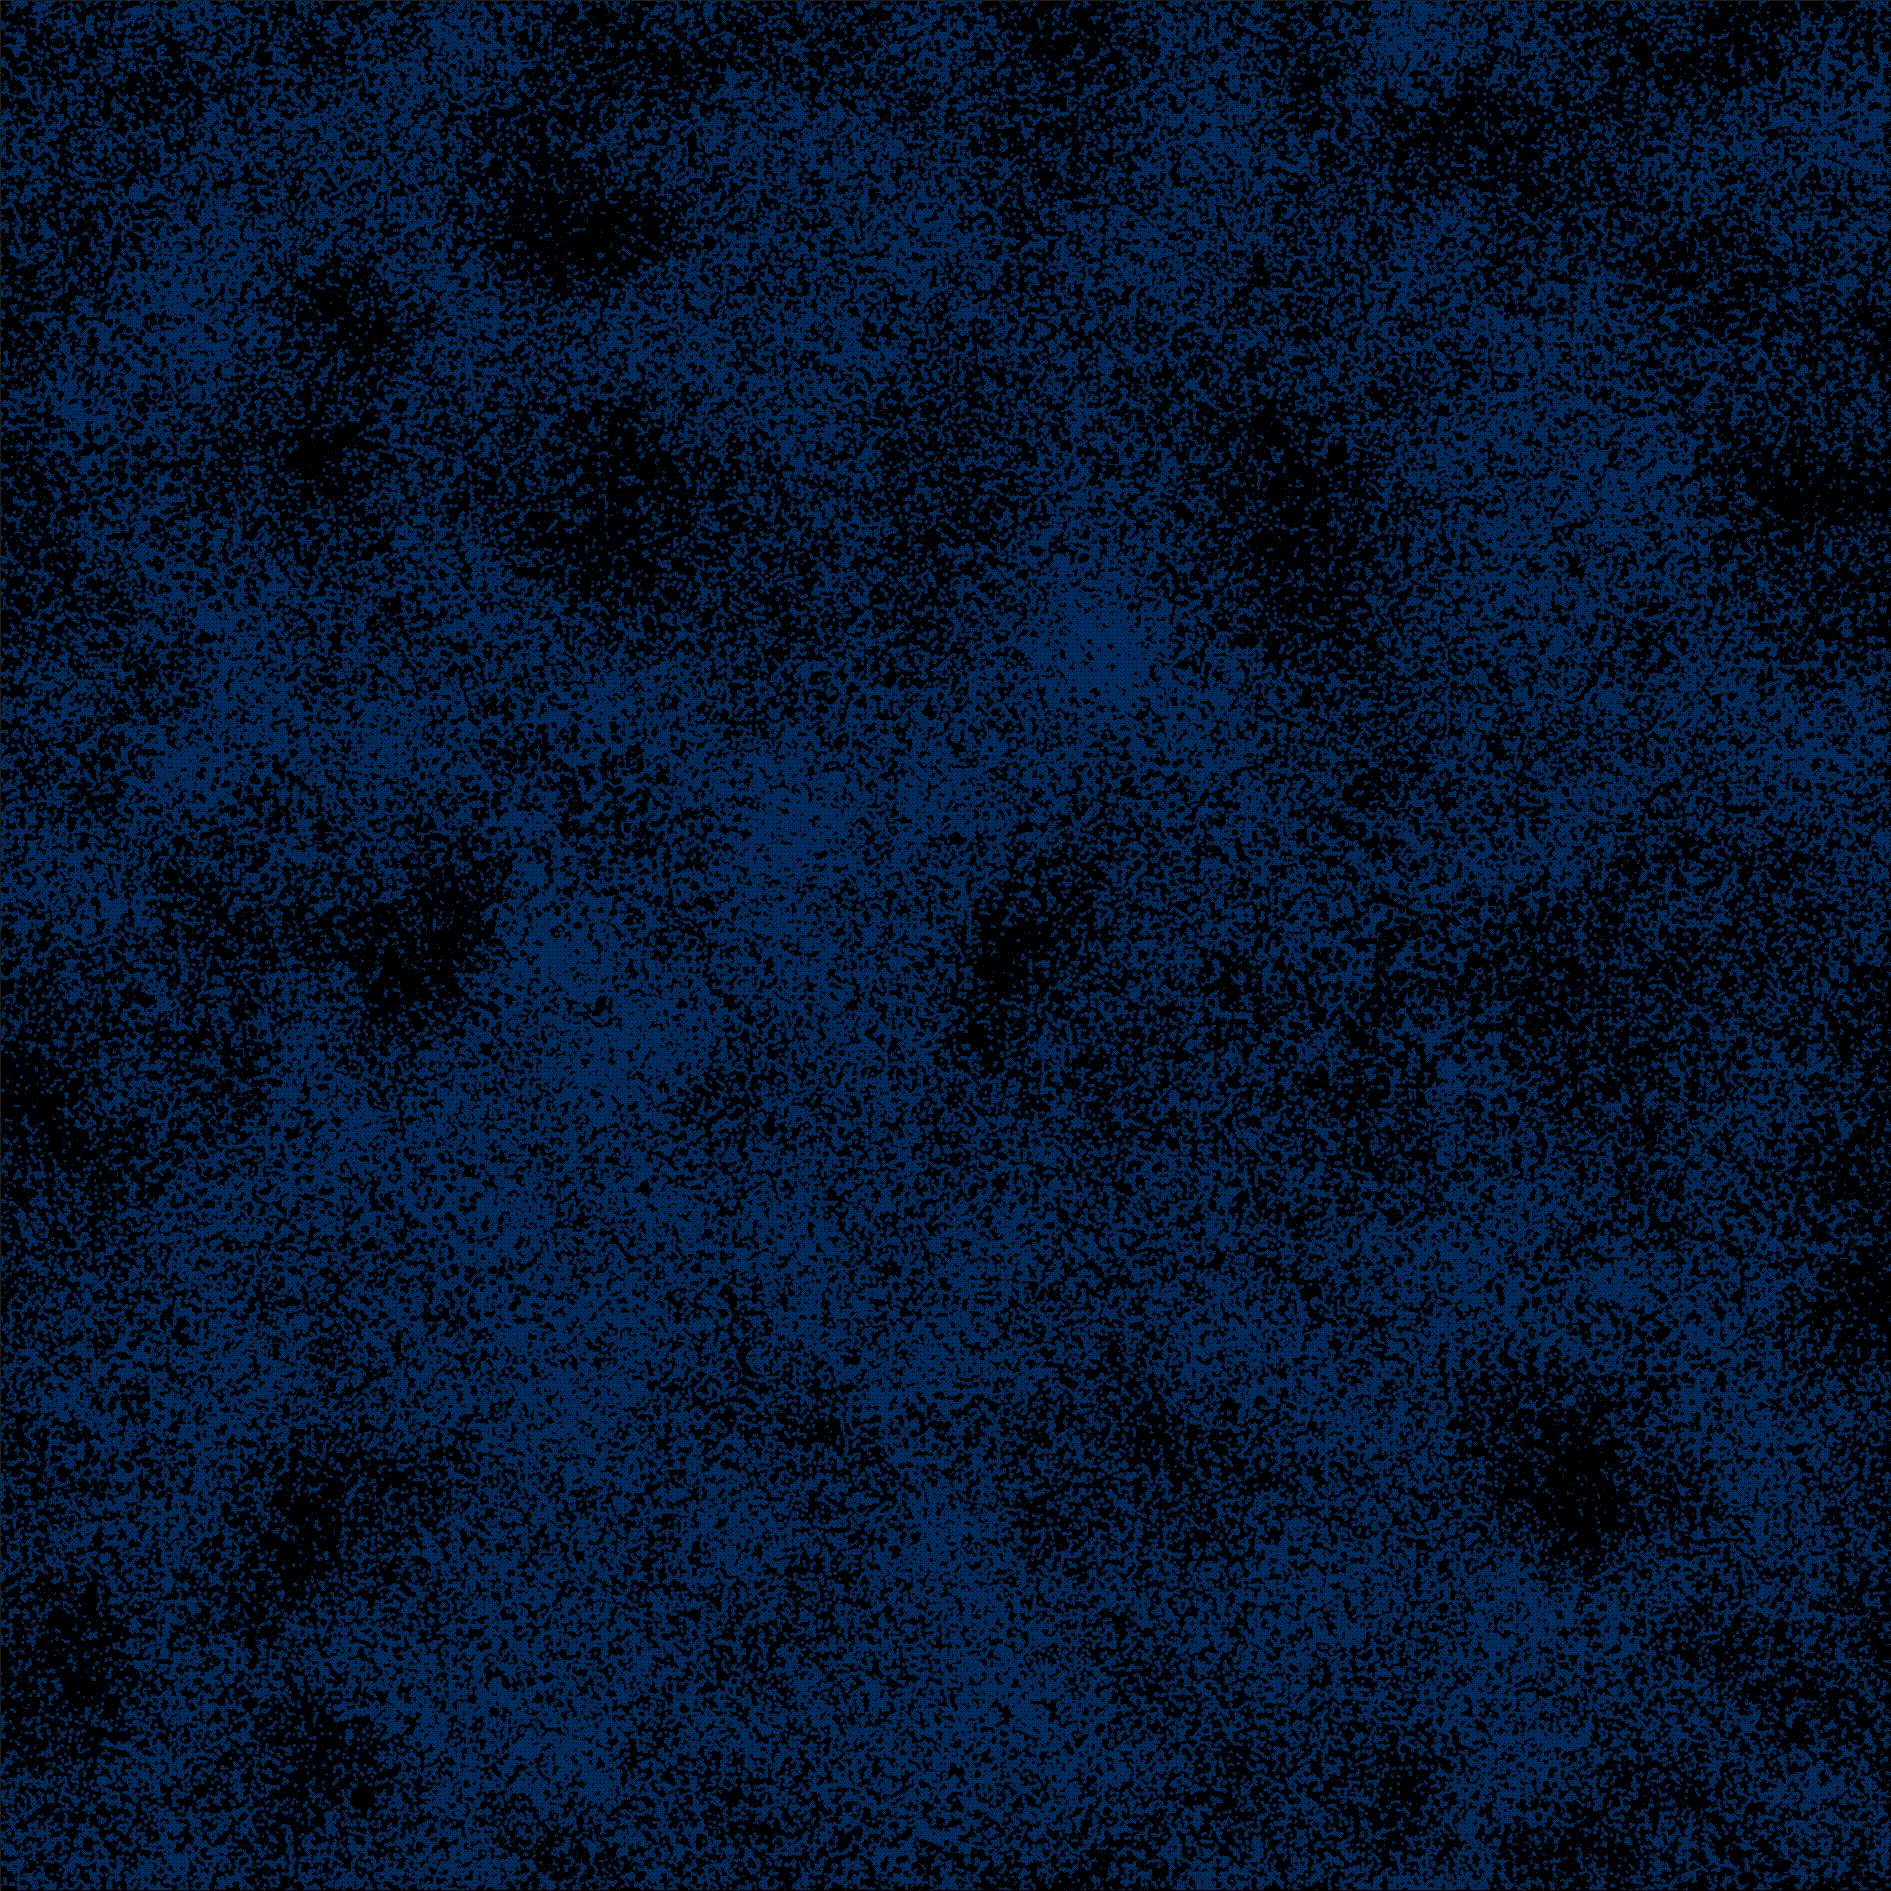 Poeirinha Desenho 1131-195 azul marinho